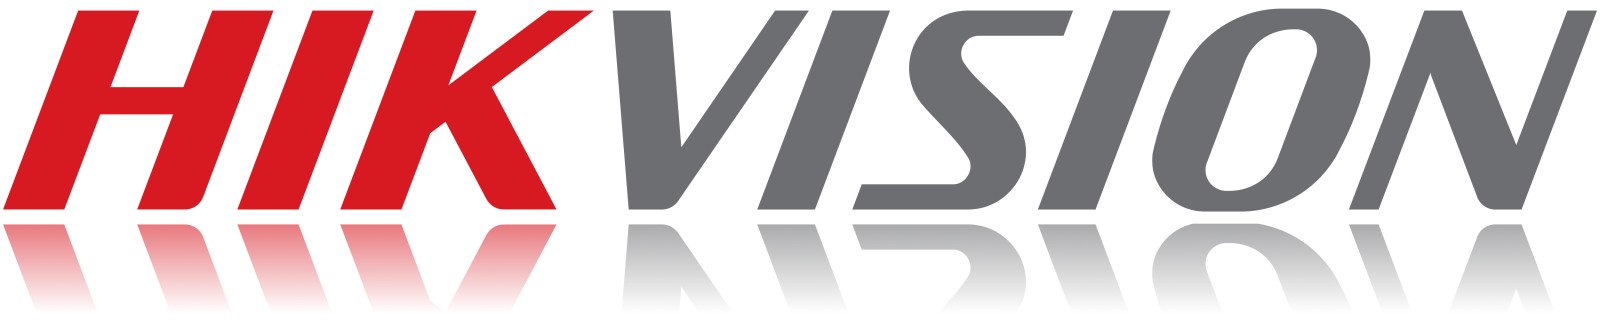 logo thương hiệu hikvision